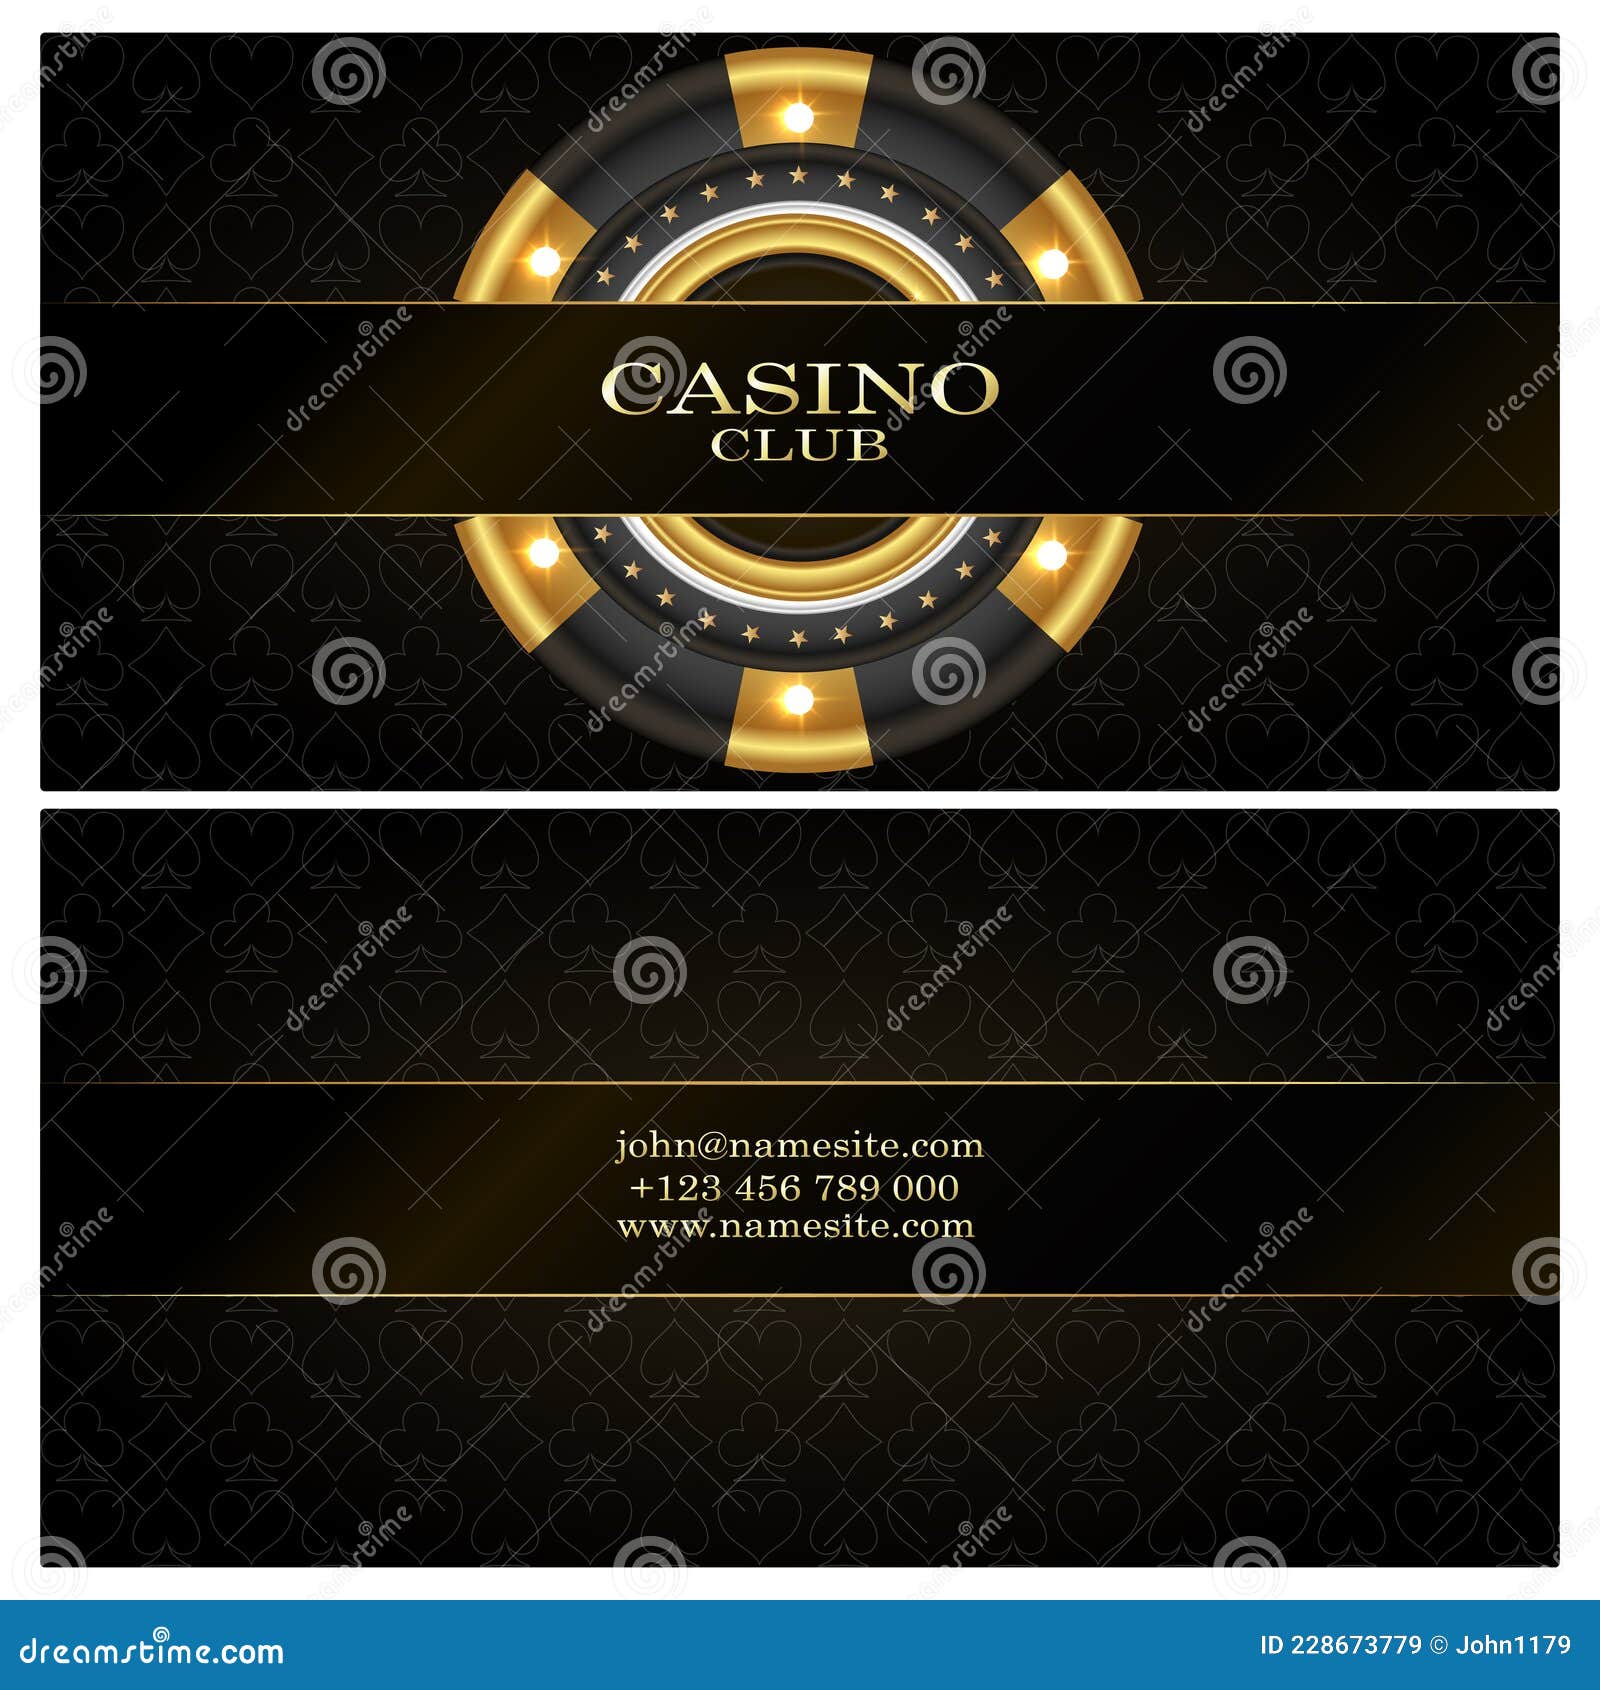 3 façons dont Twitter a détruit mon win casino unique sans que je m'en rende compte